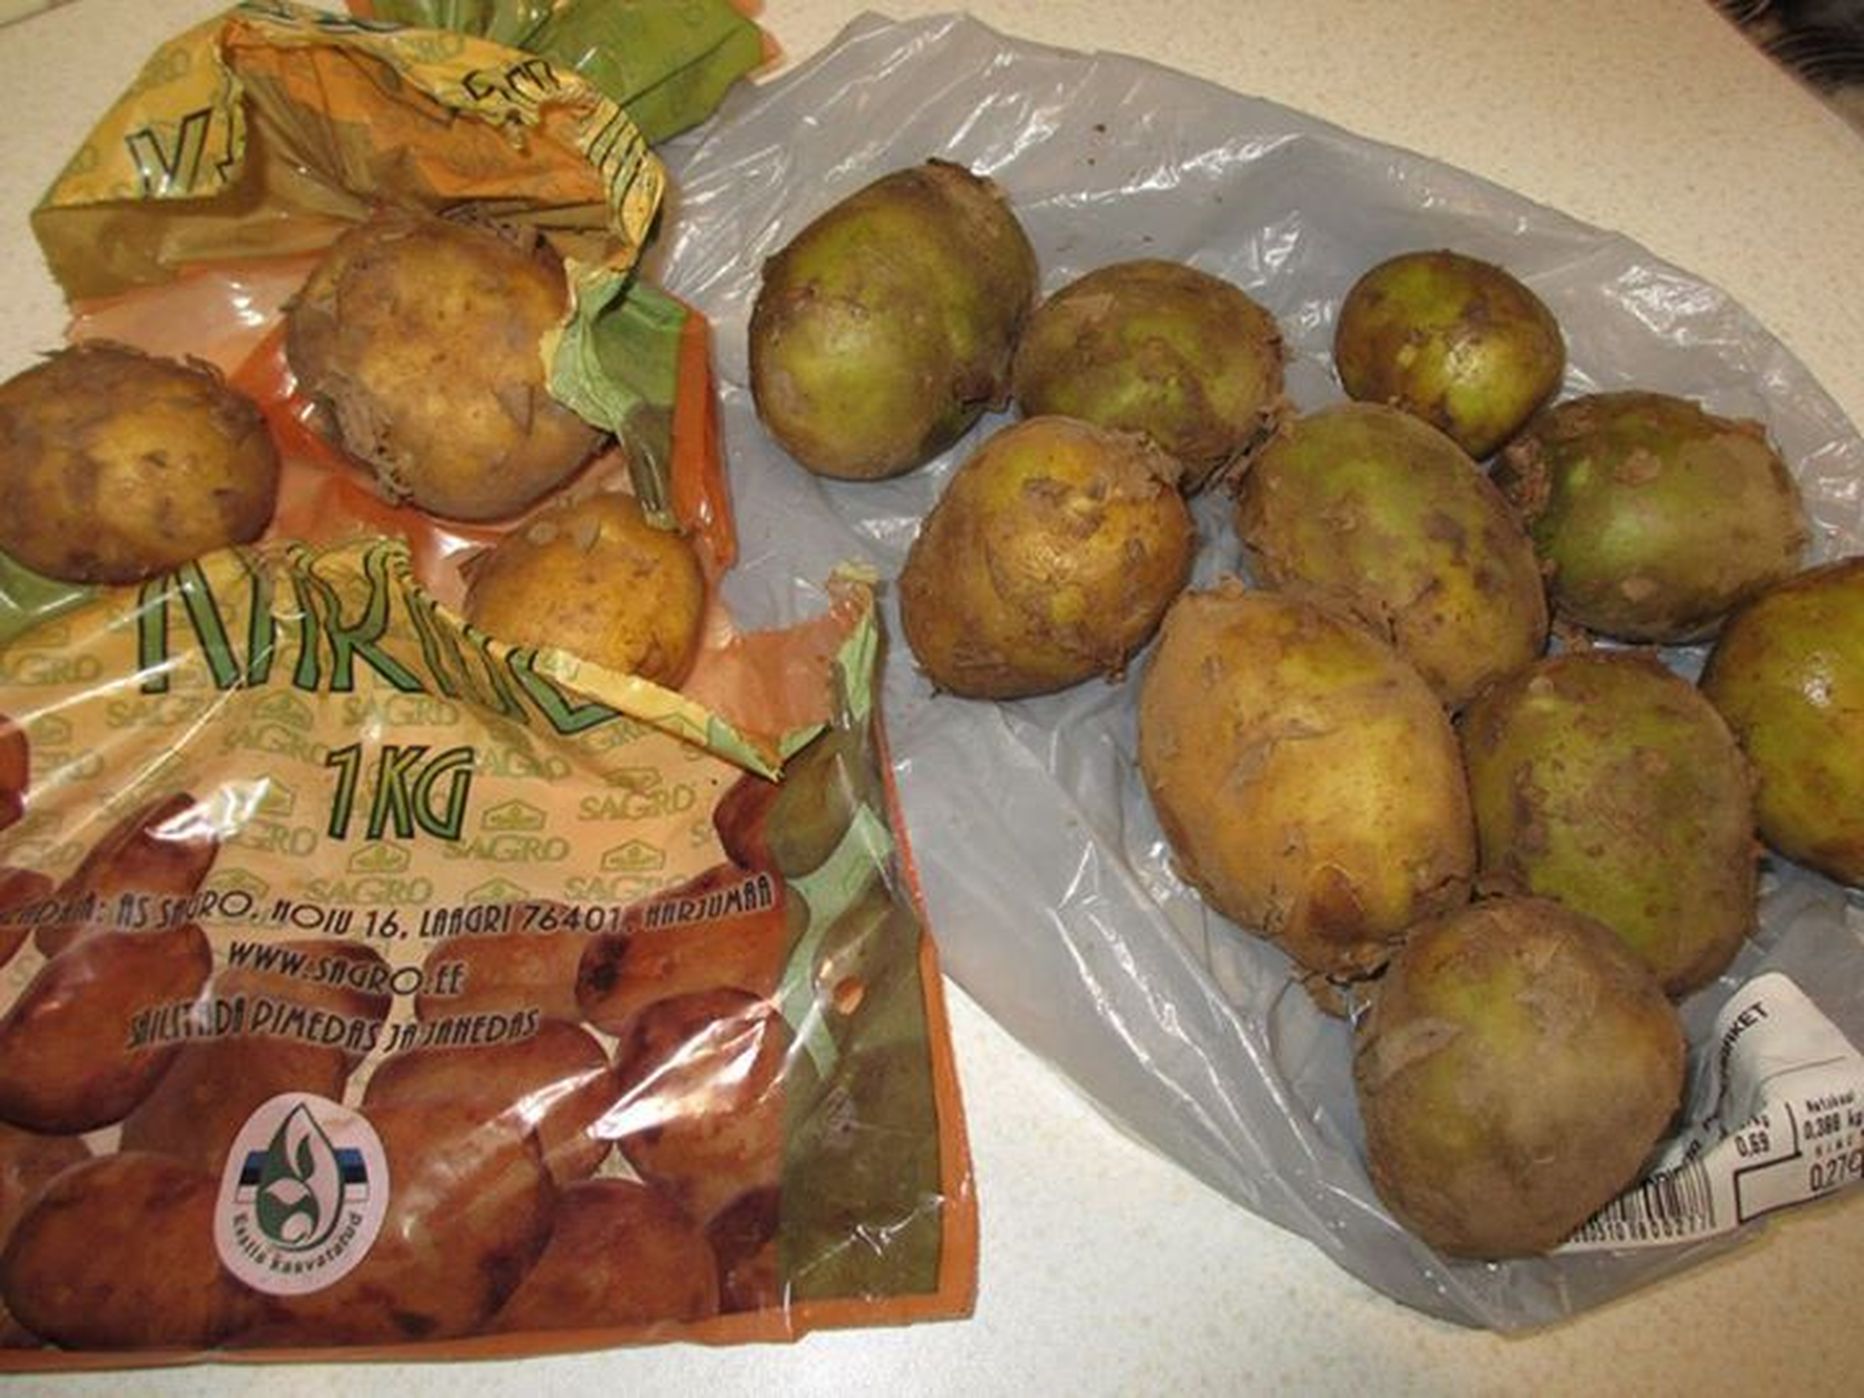 Söögikõlbulikke kartuleid oli kiloses kartulikotis kõigest kolm - ülejäänud olid rohelised ja plekilised.